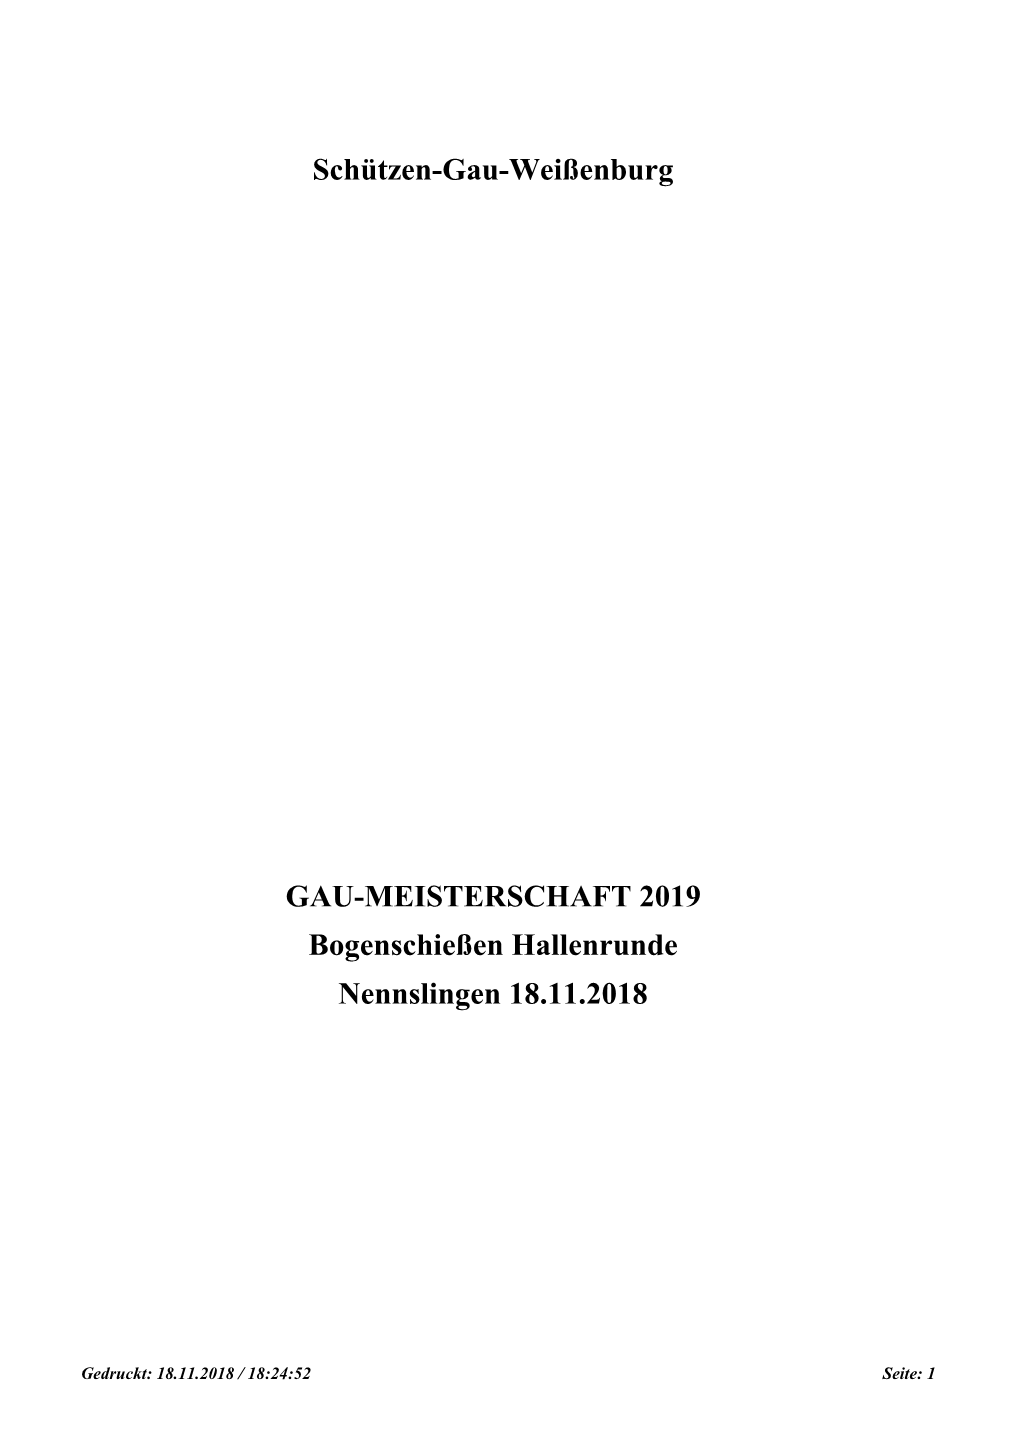 Schützen-Gau-Weißenburg GAU-MEISTERSCHAFT 2019 Bogenschießen Hallenrunde Nennslingen 18.11.2018